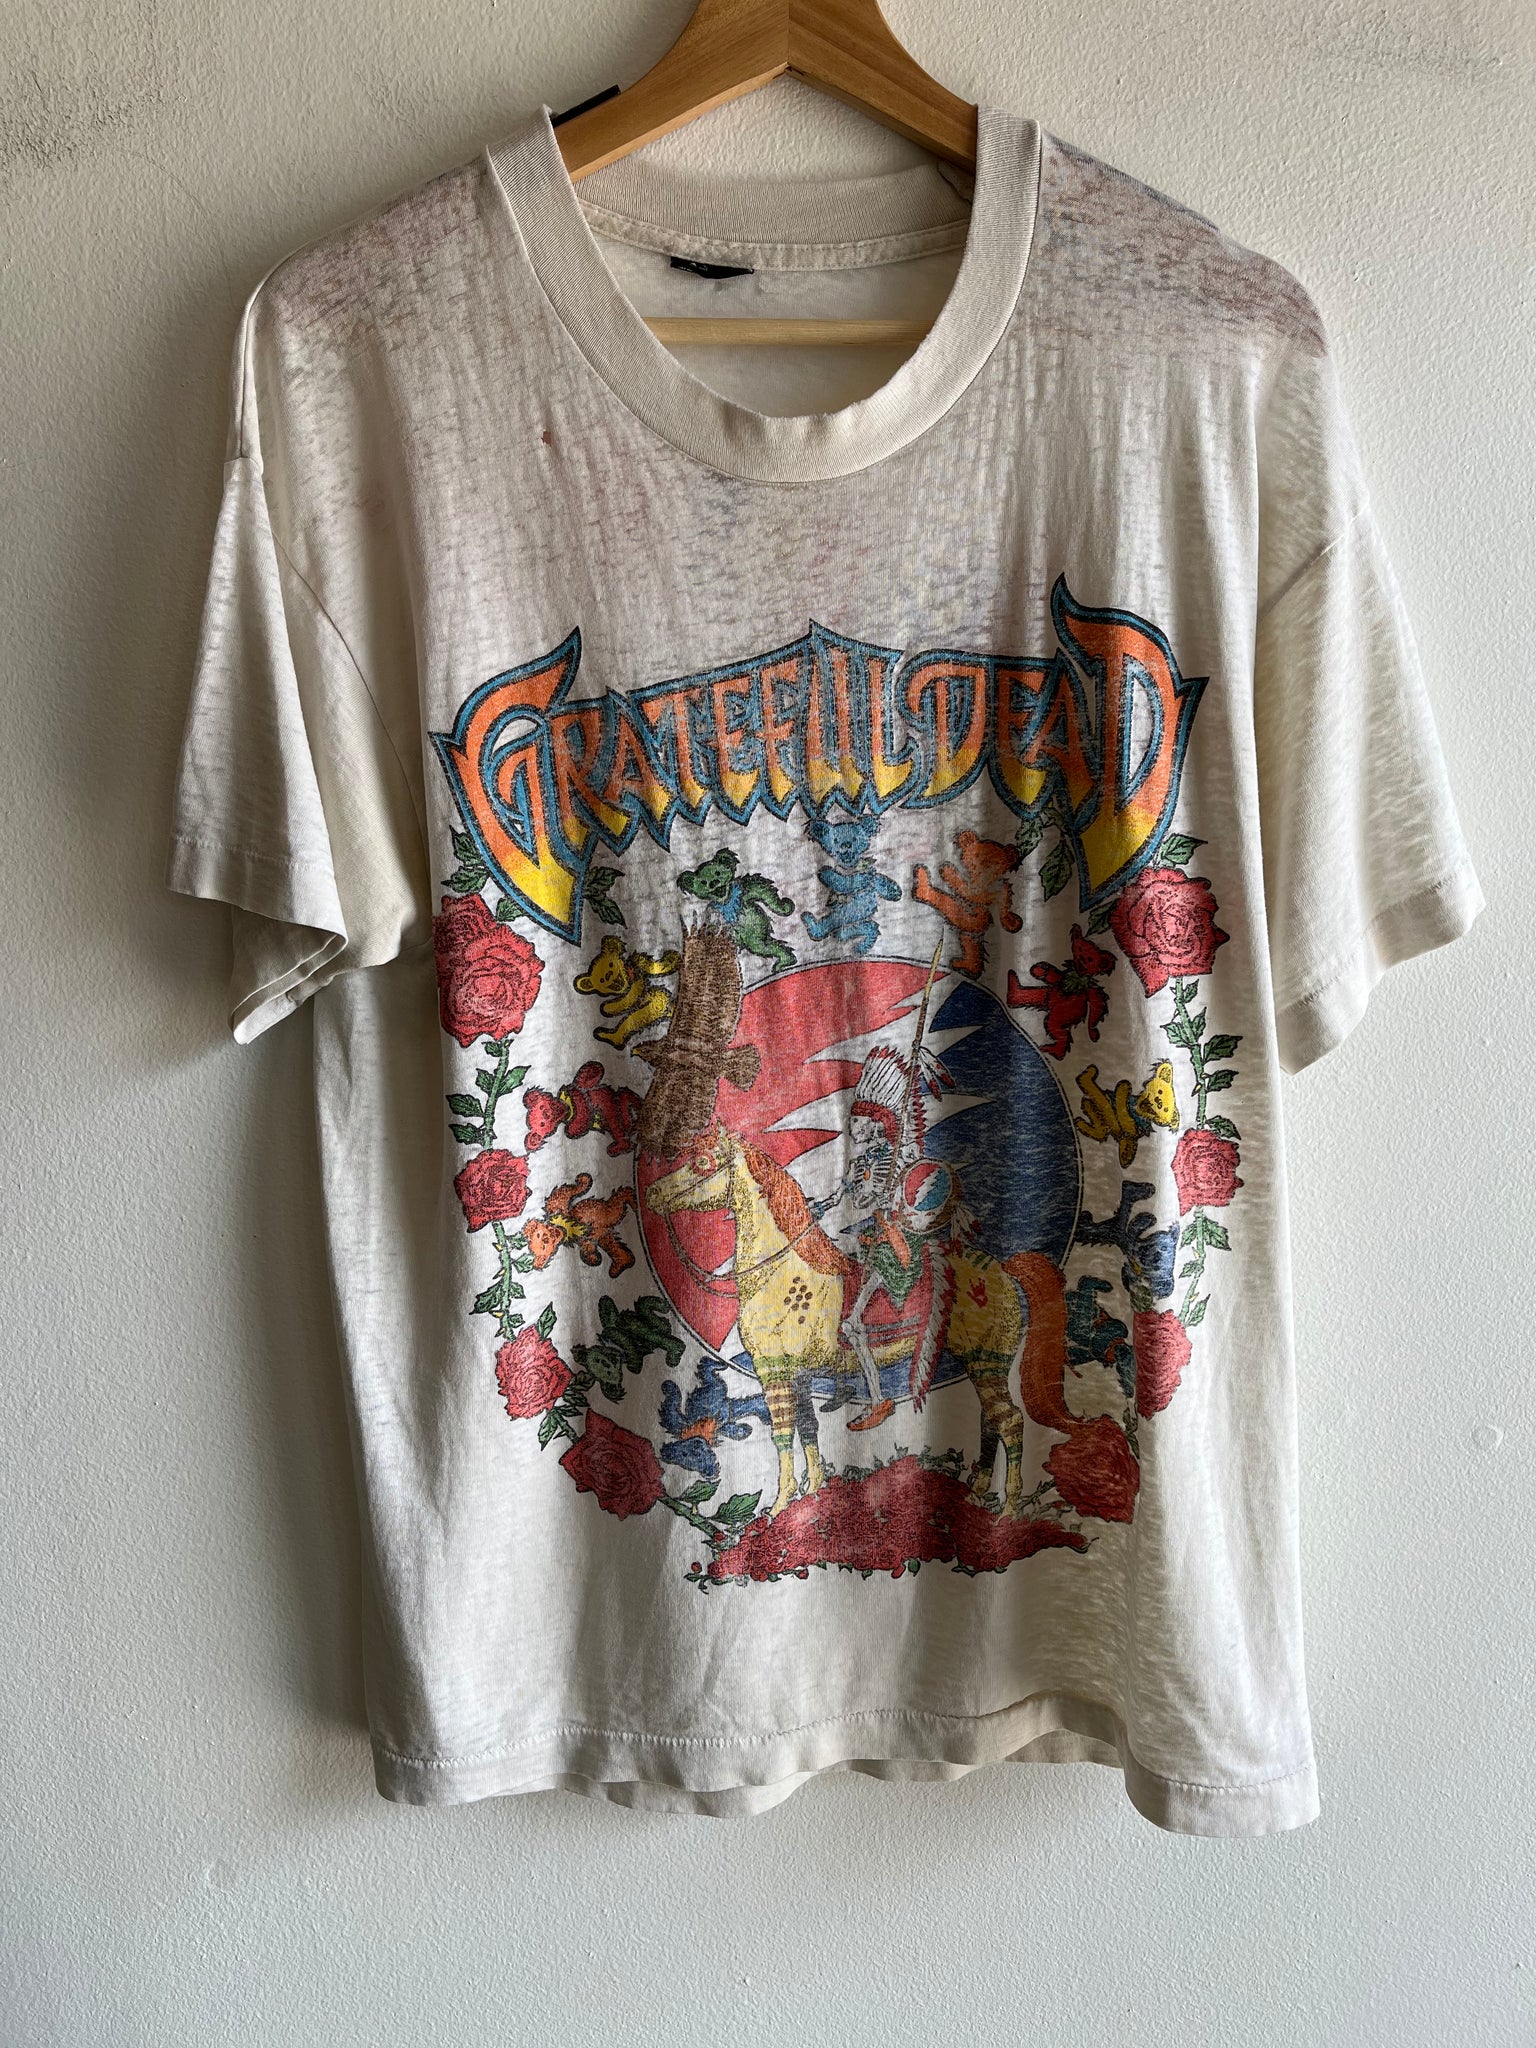 Authentic Vintage 1995 Grateful Dead “Tours ‘R’ Us” Shirt